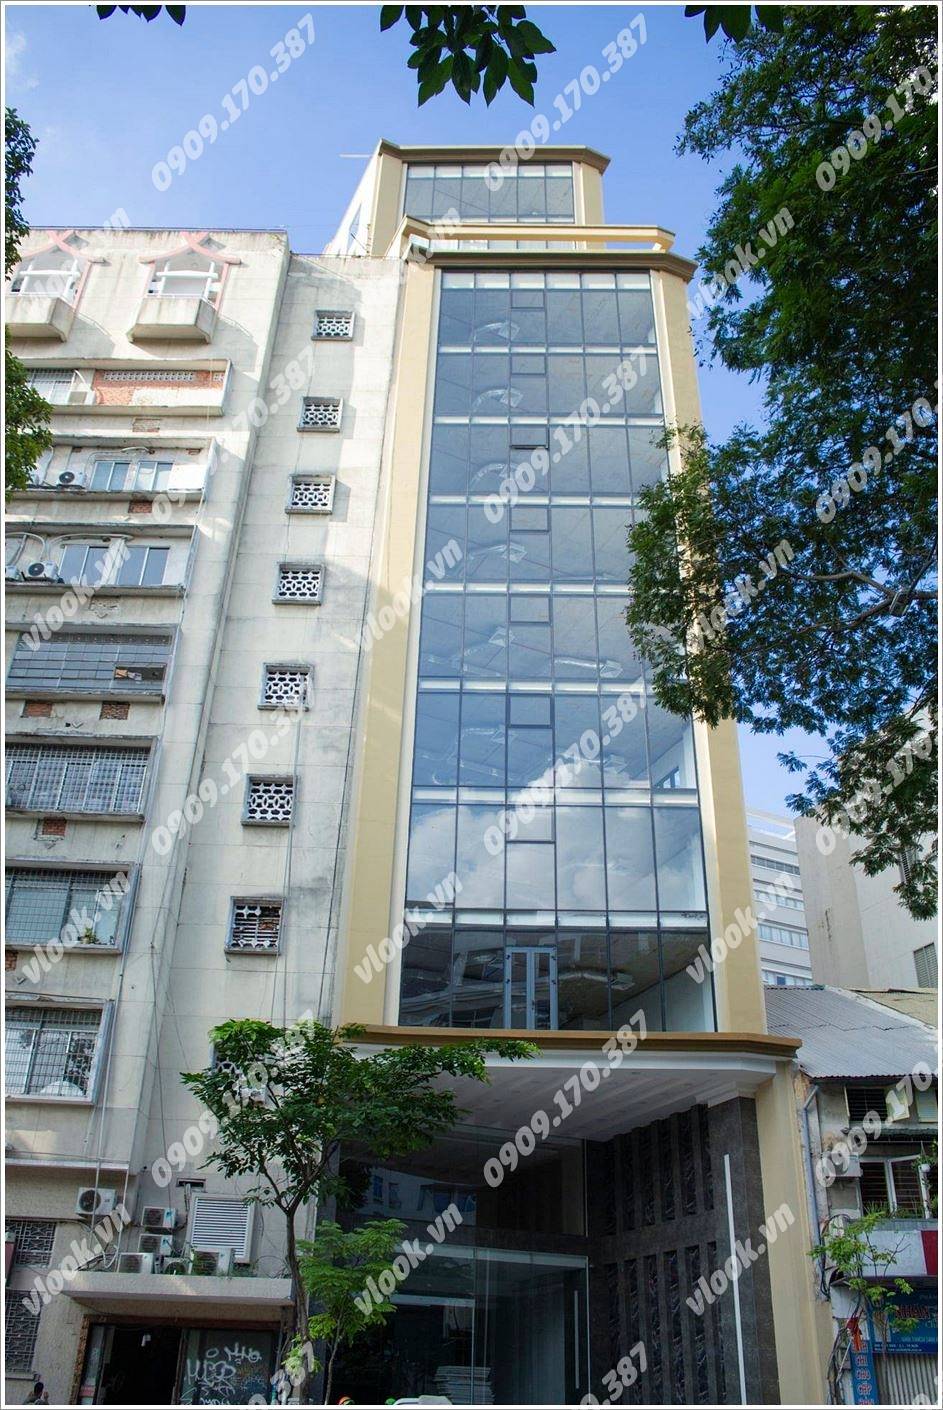 Cao ốc cho thuê văn phòng Saigon Khánh Nguyên, Hàm Nghi, Quận 1 - vlook.vn